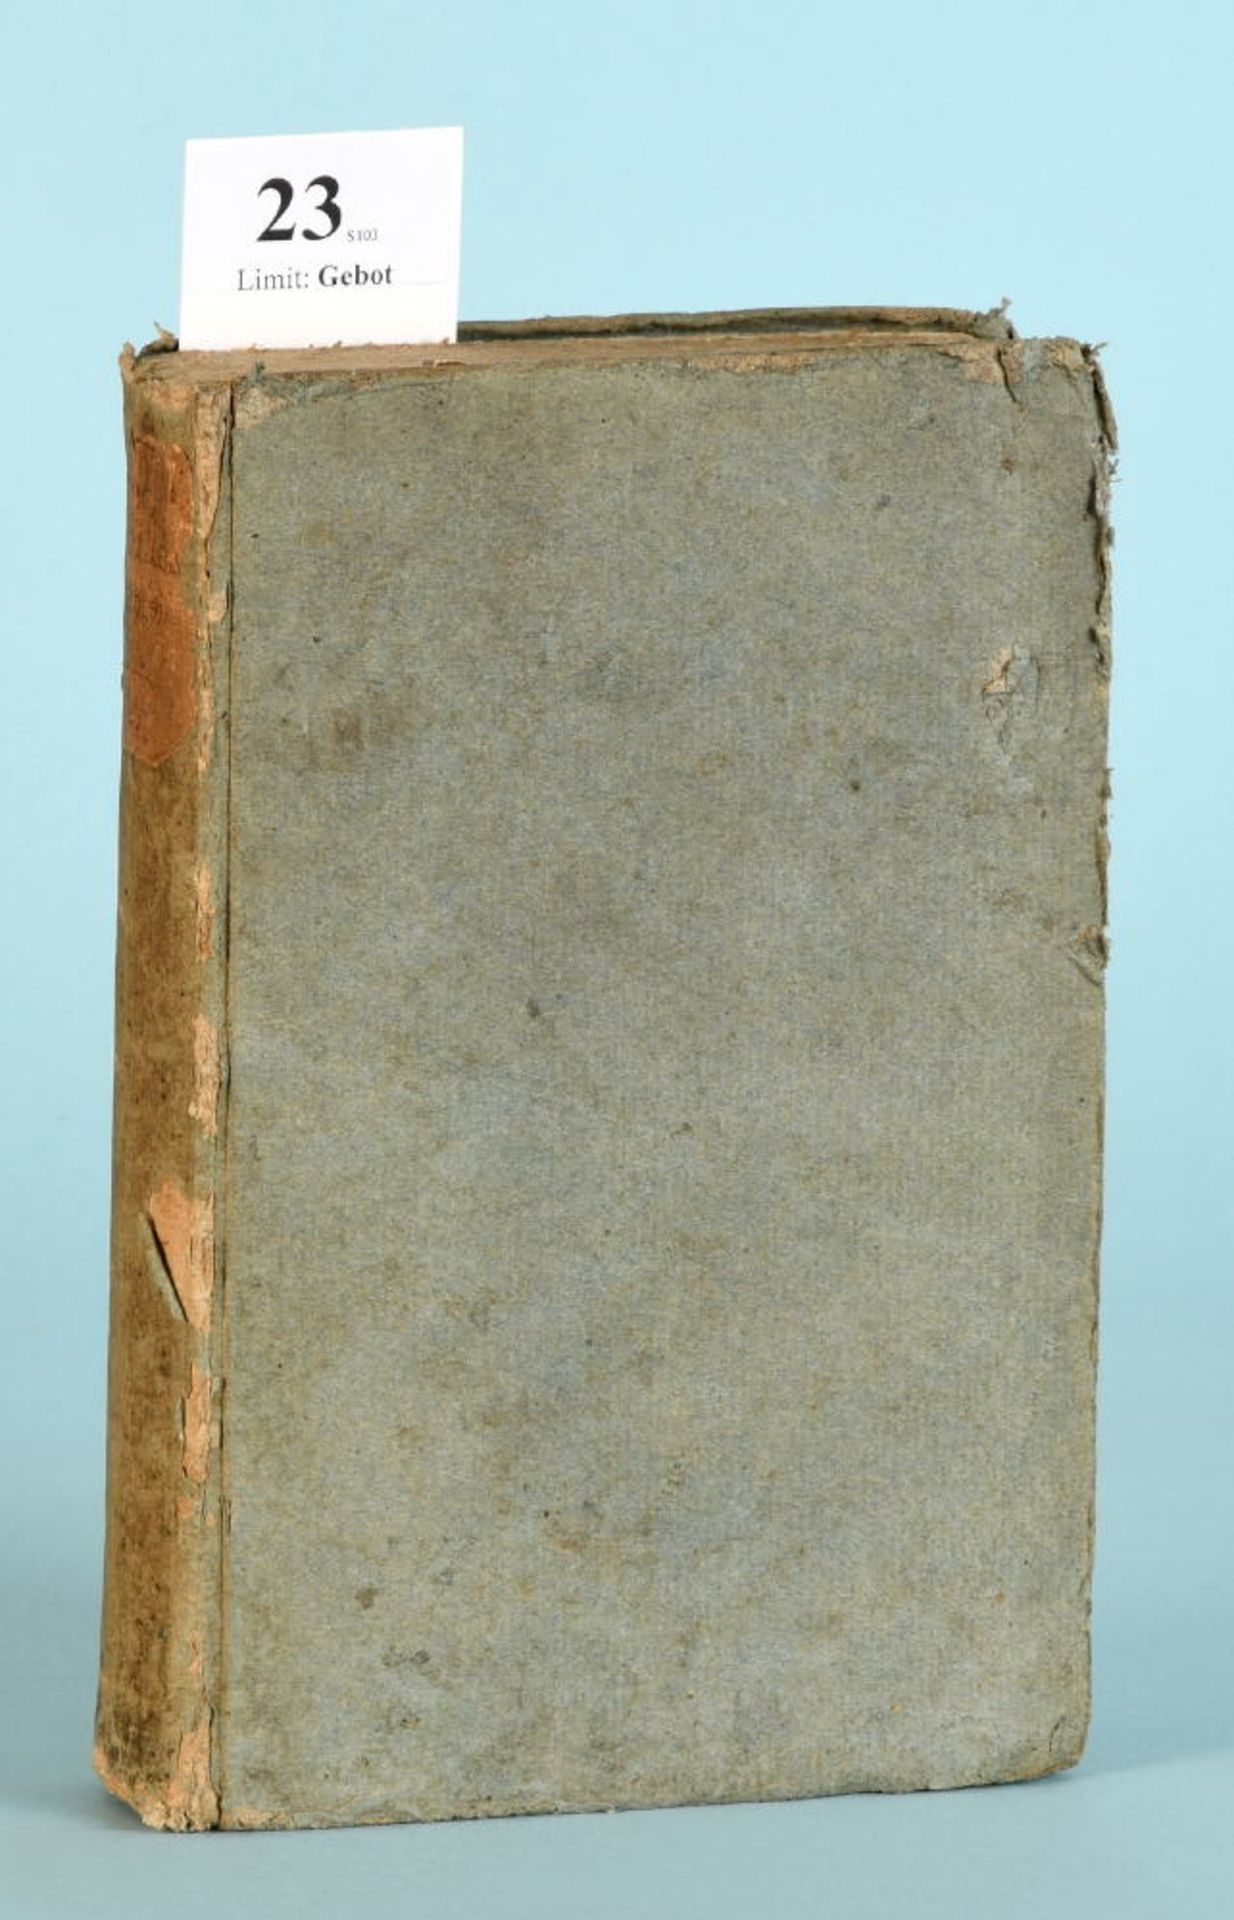 Arx, Ildefons von "Geschichten des Kantons St. Gallen"Band 1, 554 S., bei Zollikofer u. Züblin,